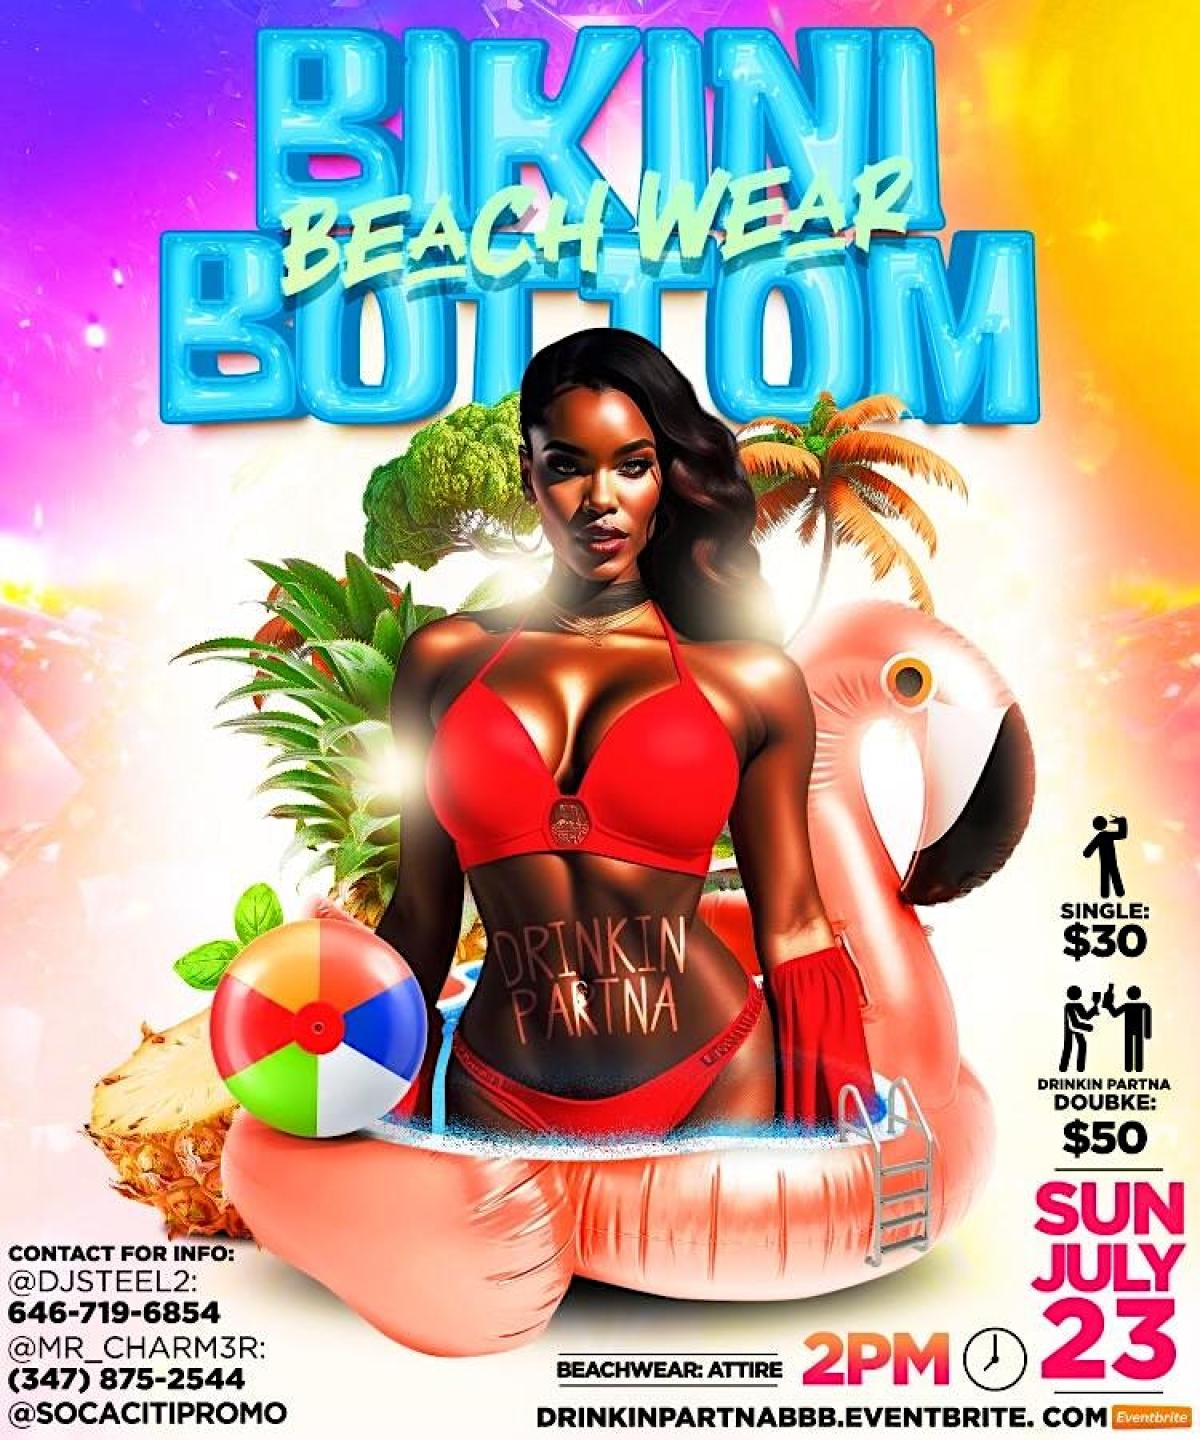 Drinkin Partna Summer Bikini Bottom Beachwear flyer or graphic.